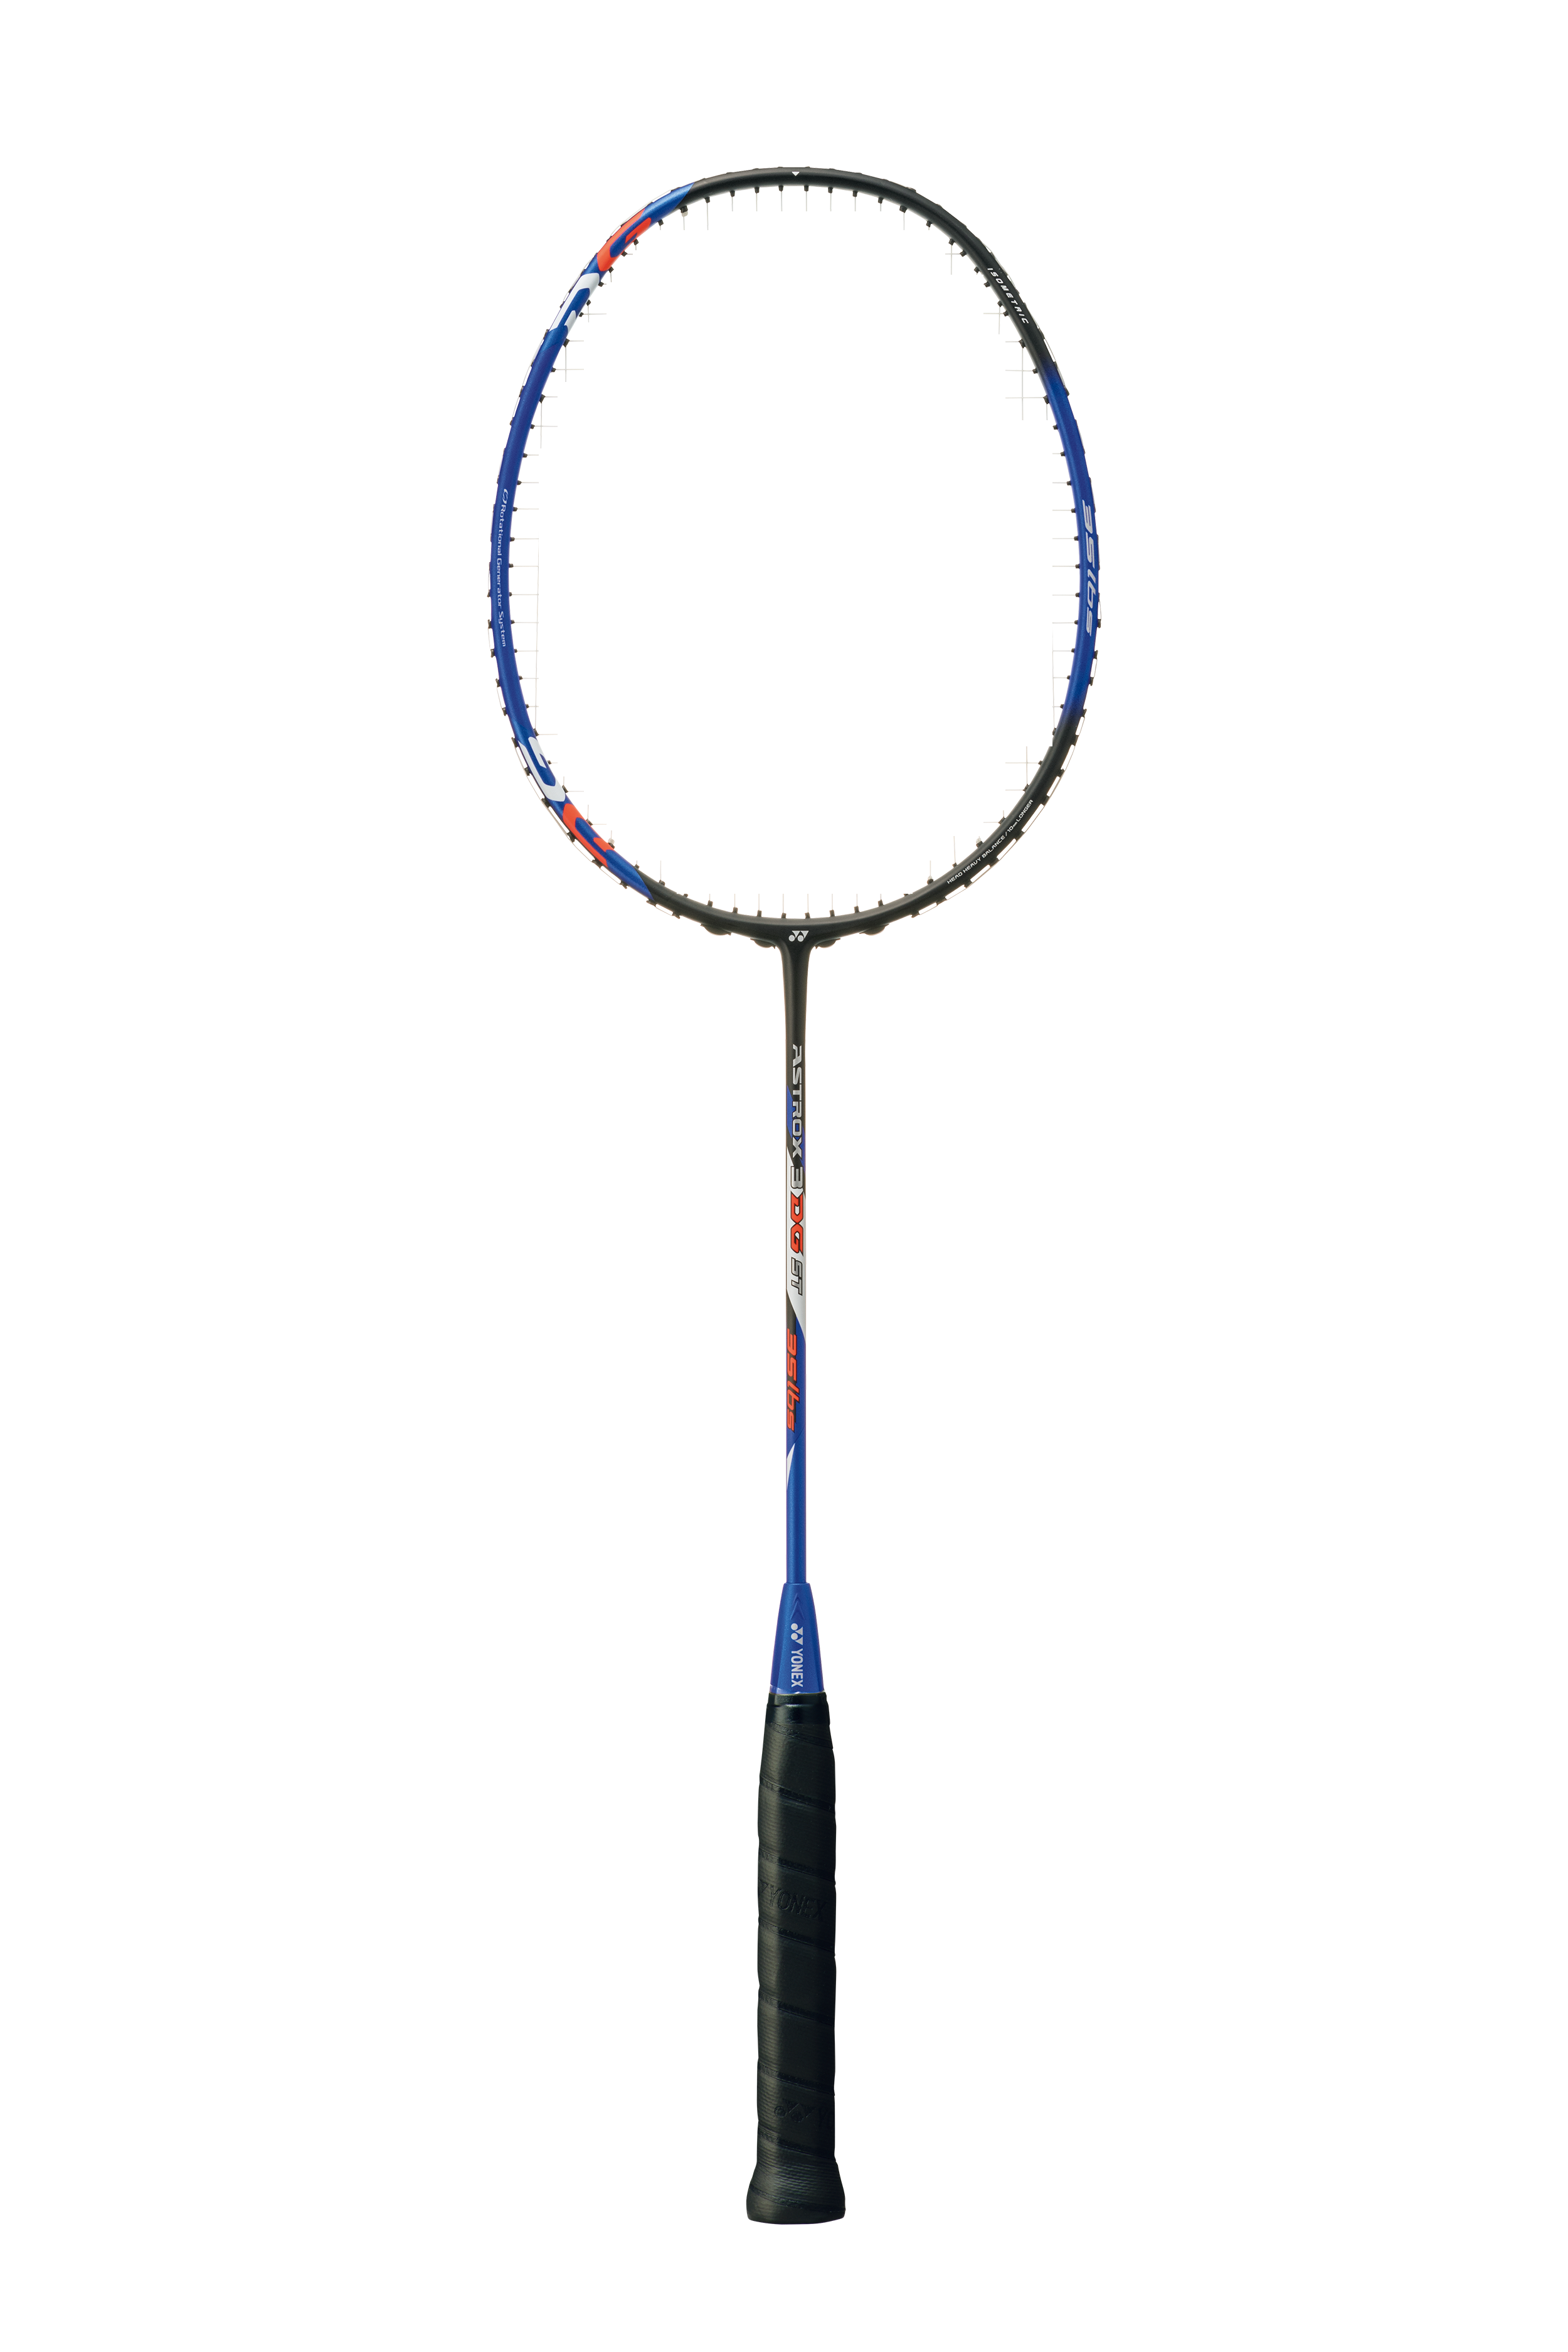 Yonex Badminton racquet ASTROX 3 DG ST - BLACK/BLUE - 4U5 - Max 35 lbs -Unstrung